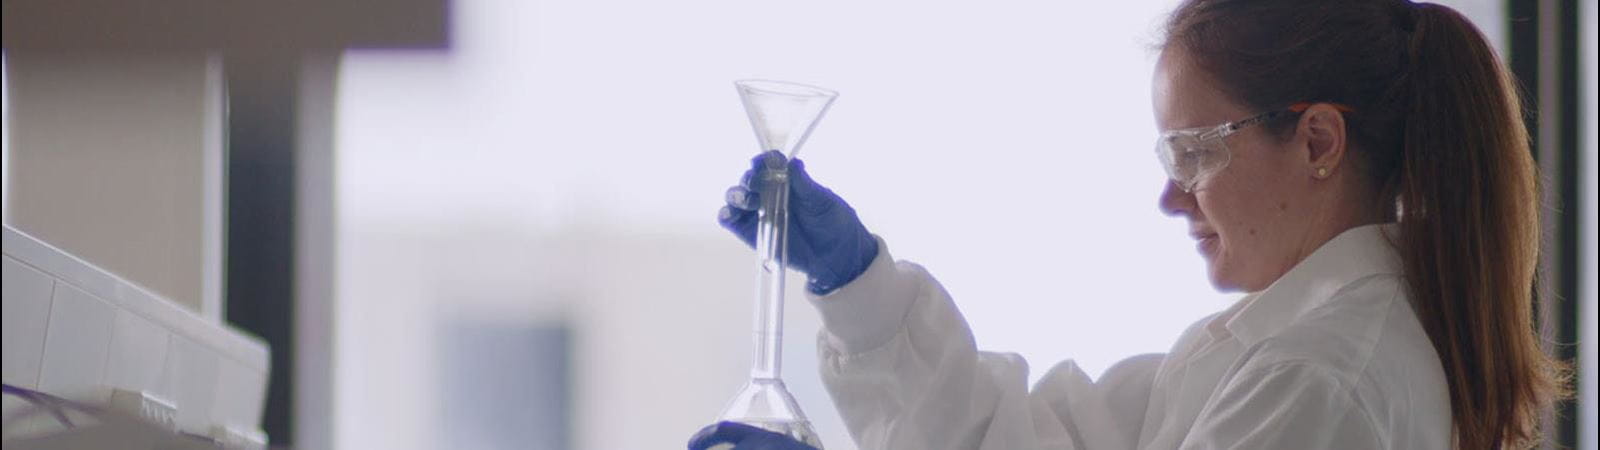 CSL female scientist in lab